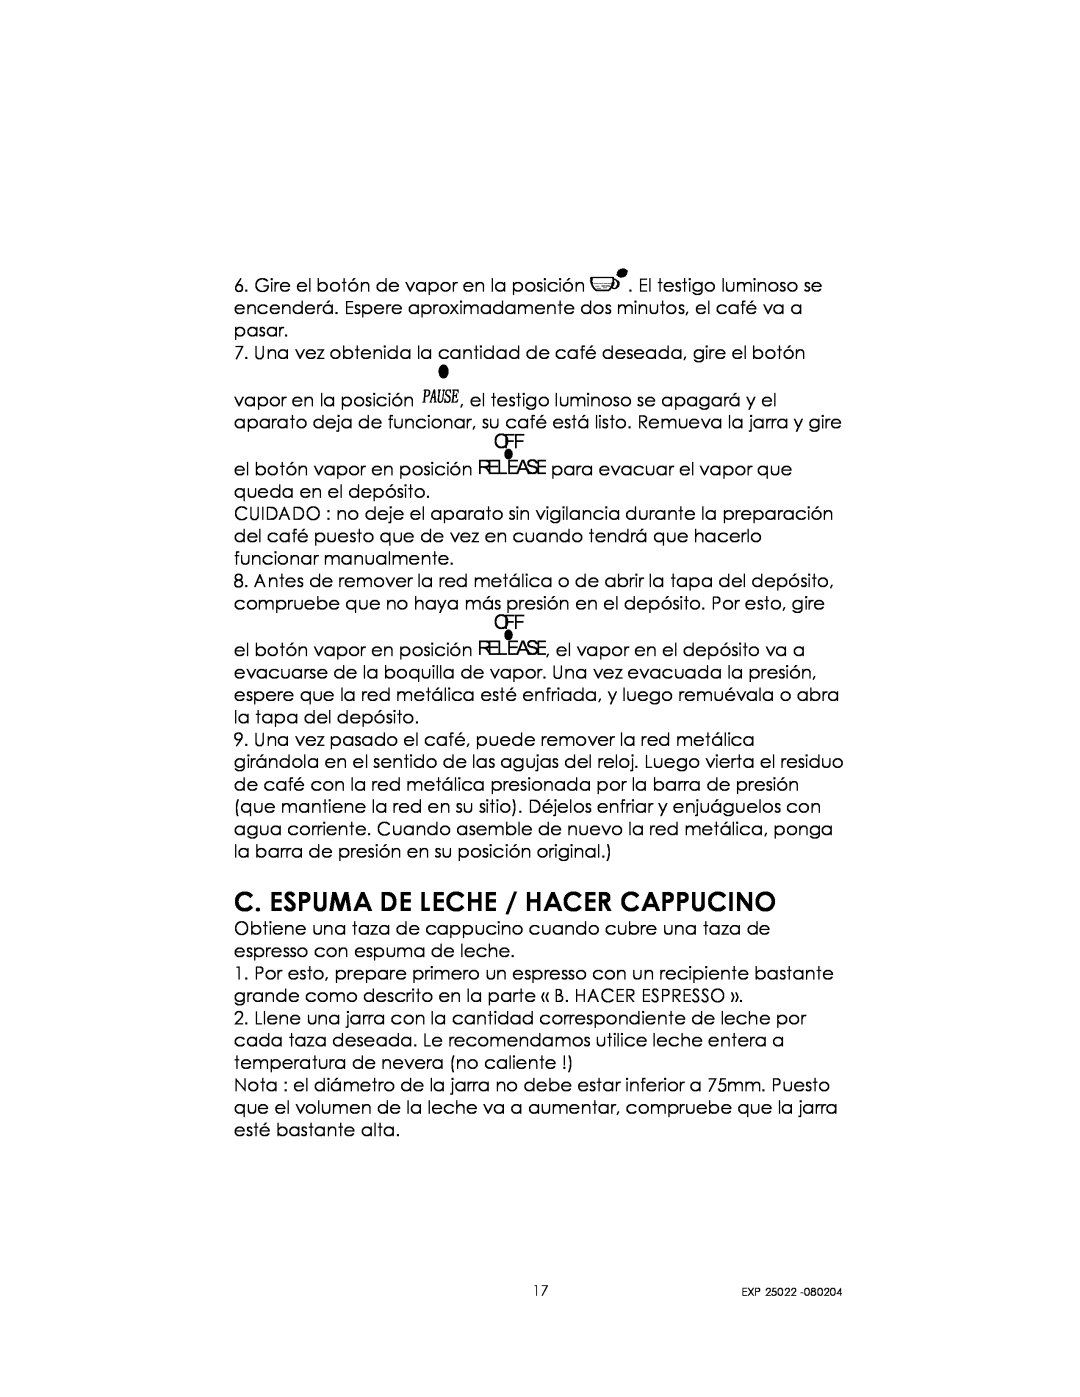 Kalorik EXP 25022 manual C. Espuma De Leche / Hacer Cappucino 